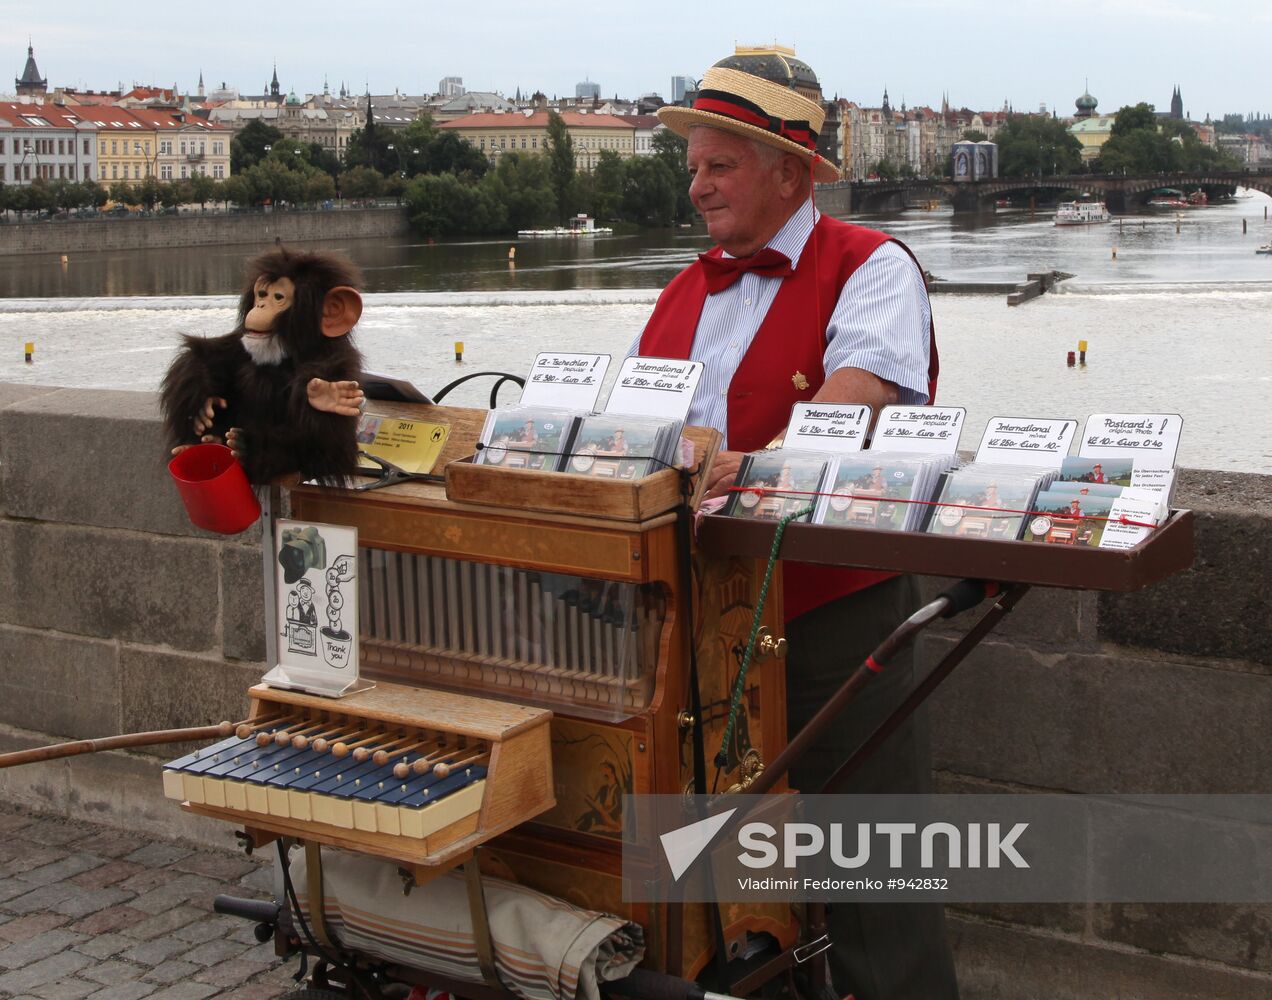 Organ grinder seen on Charles Bridge in Prague